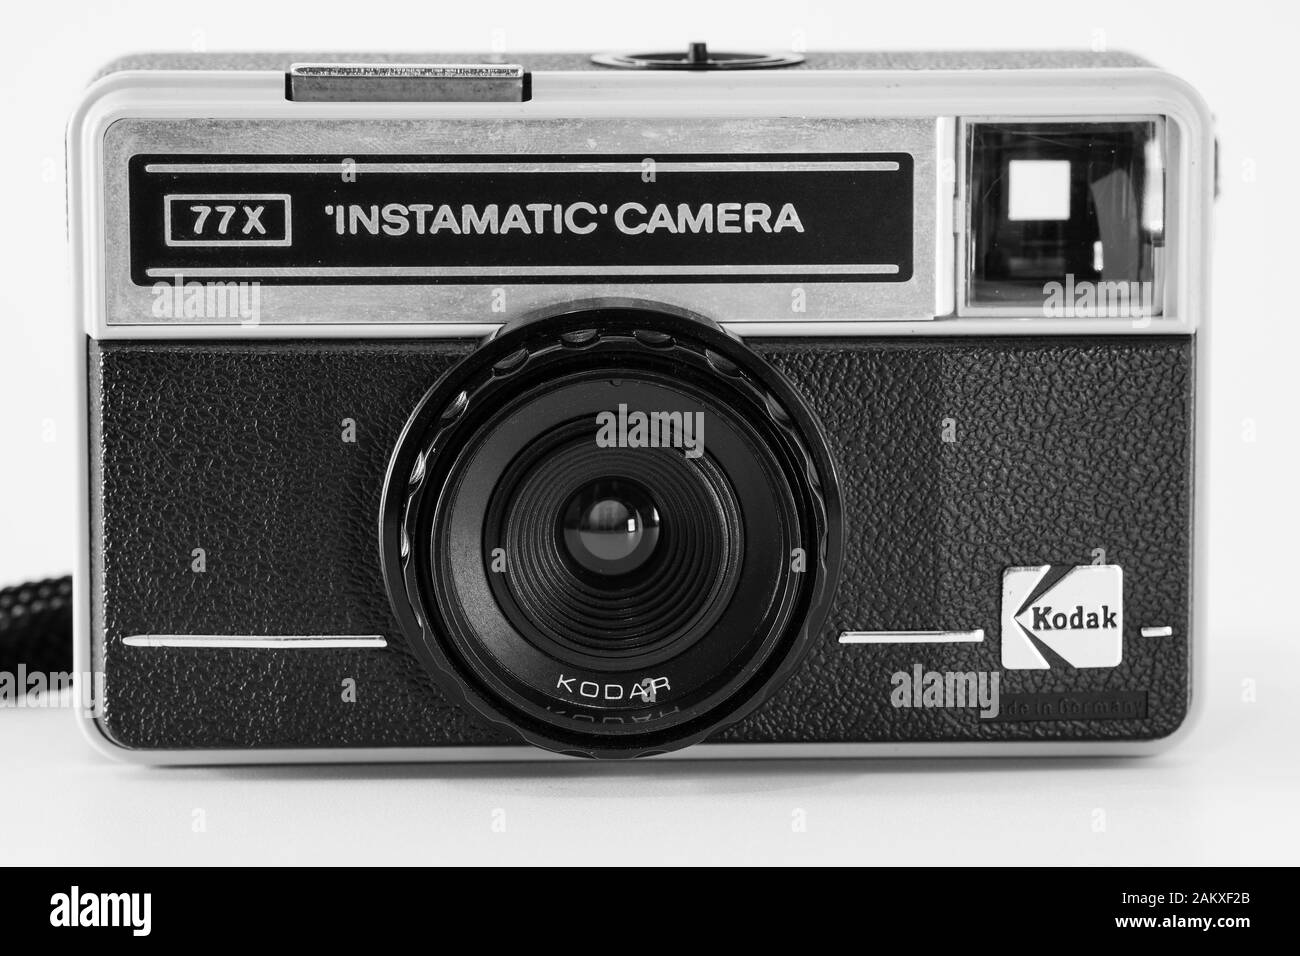 Vista frontale di una fotocamera compatta con marchio Kodak modello 'Instamatic Camera 77x', l'immagine monocromatica in bianco e nero. Foto Stock